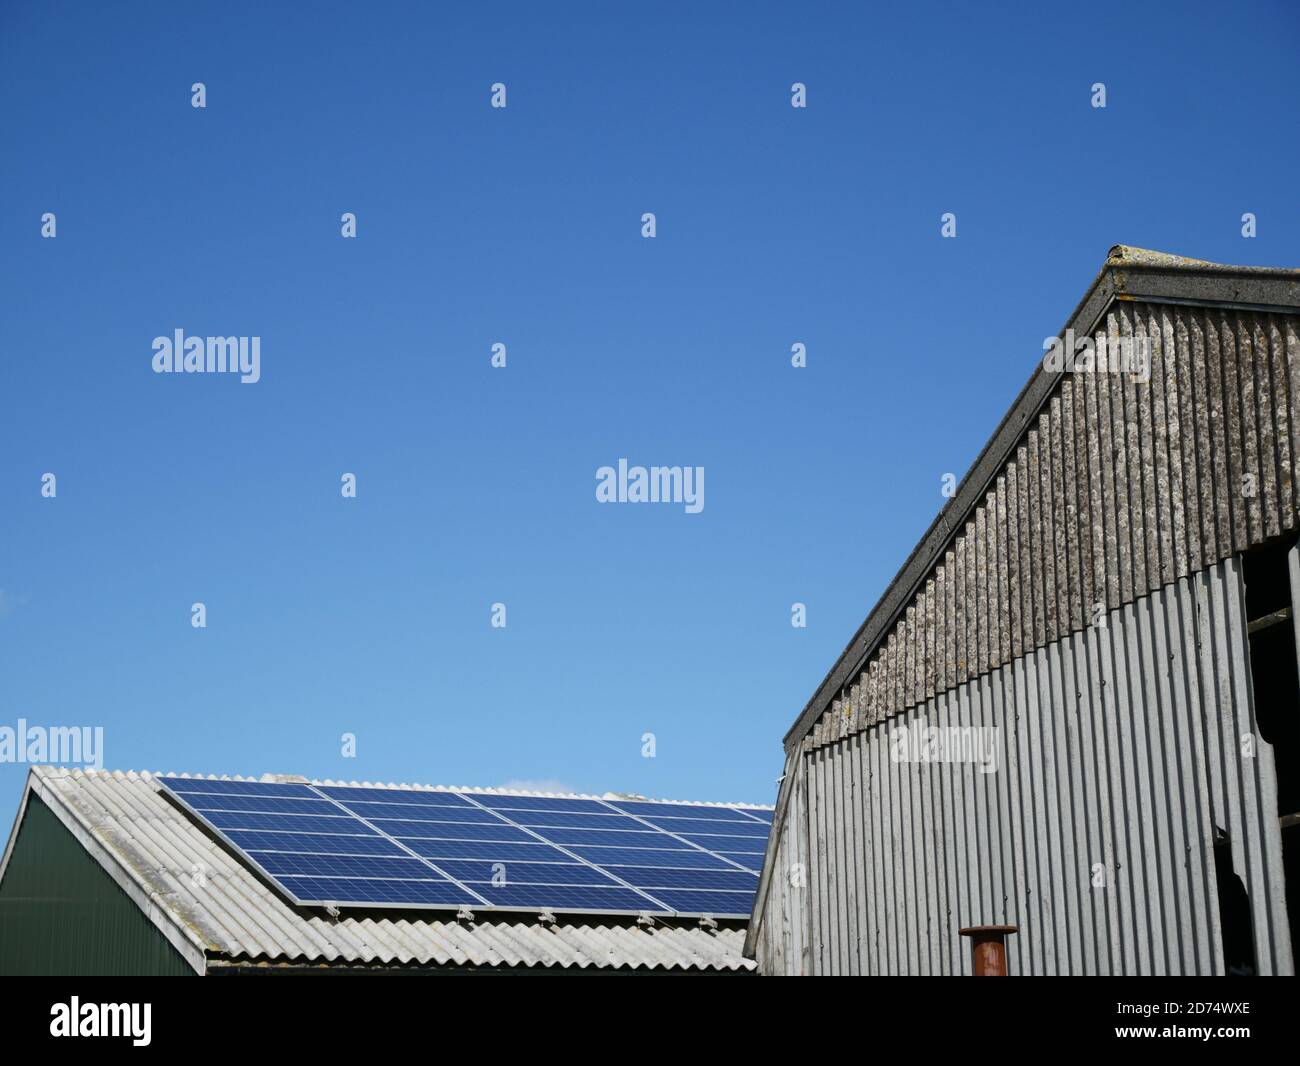 Affari agricoli immagini e fotografie stock ad alta risoluzione - Alamy